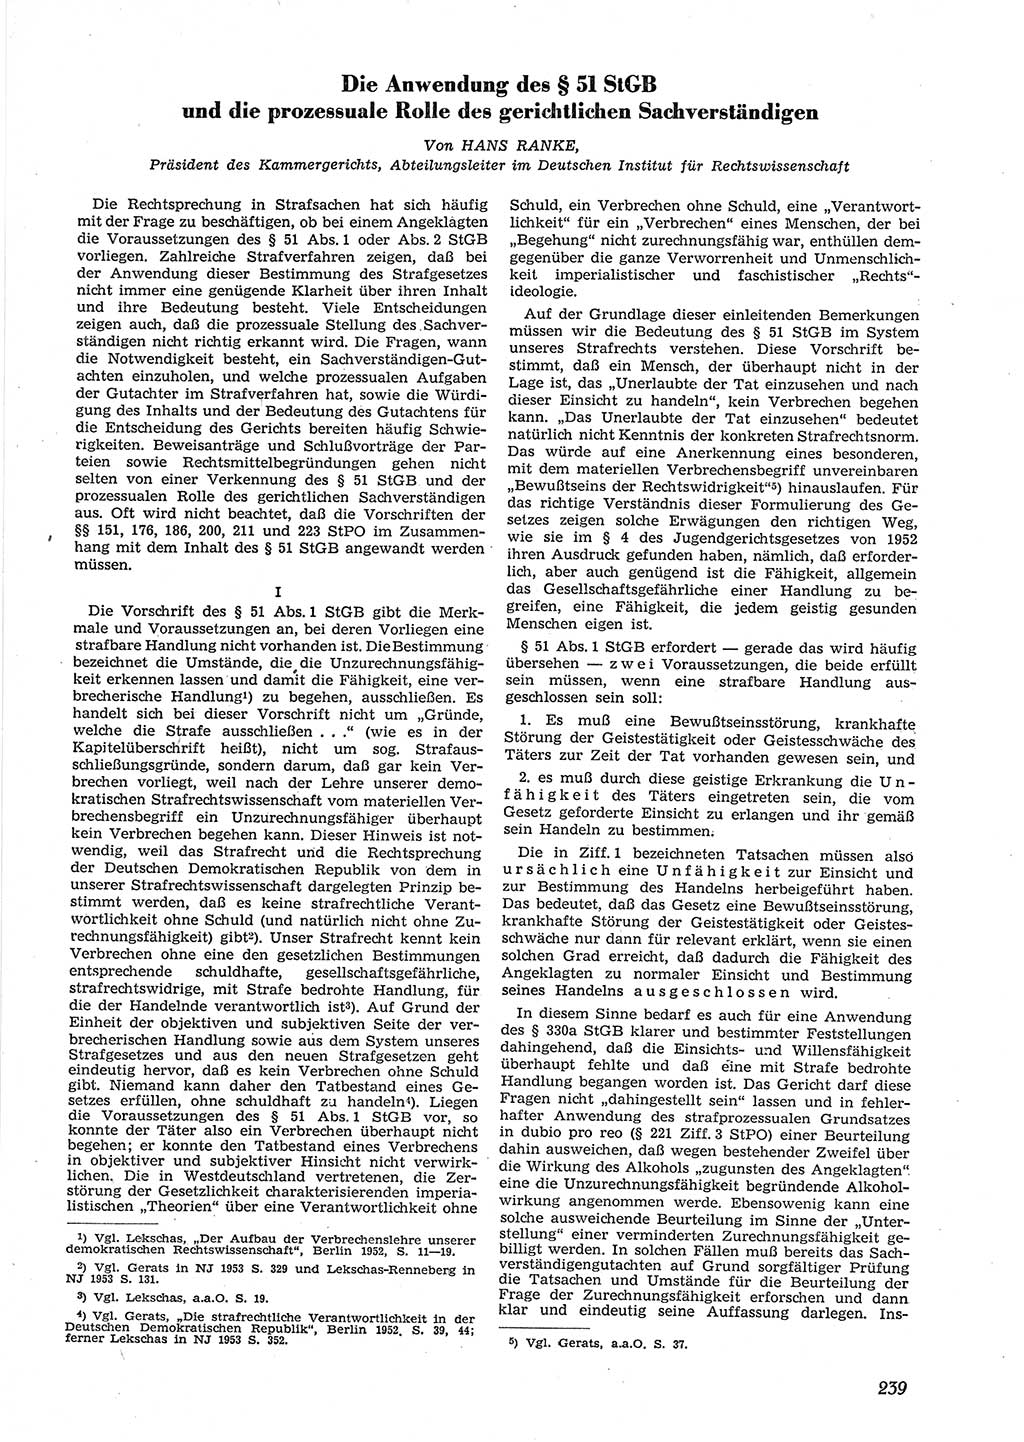 Neue Justiz (NJ), Zeitschrift für Recht und Rechtswissenschaft [Deutsche Demokratische Republik (DDR)], 9. Jahrgang 1955, Seite 239 (NJ DDR 1955, S. 239)